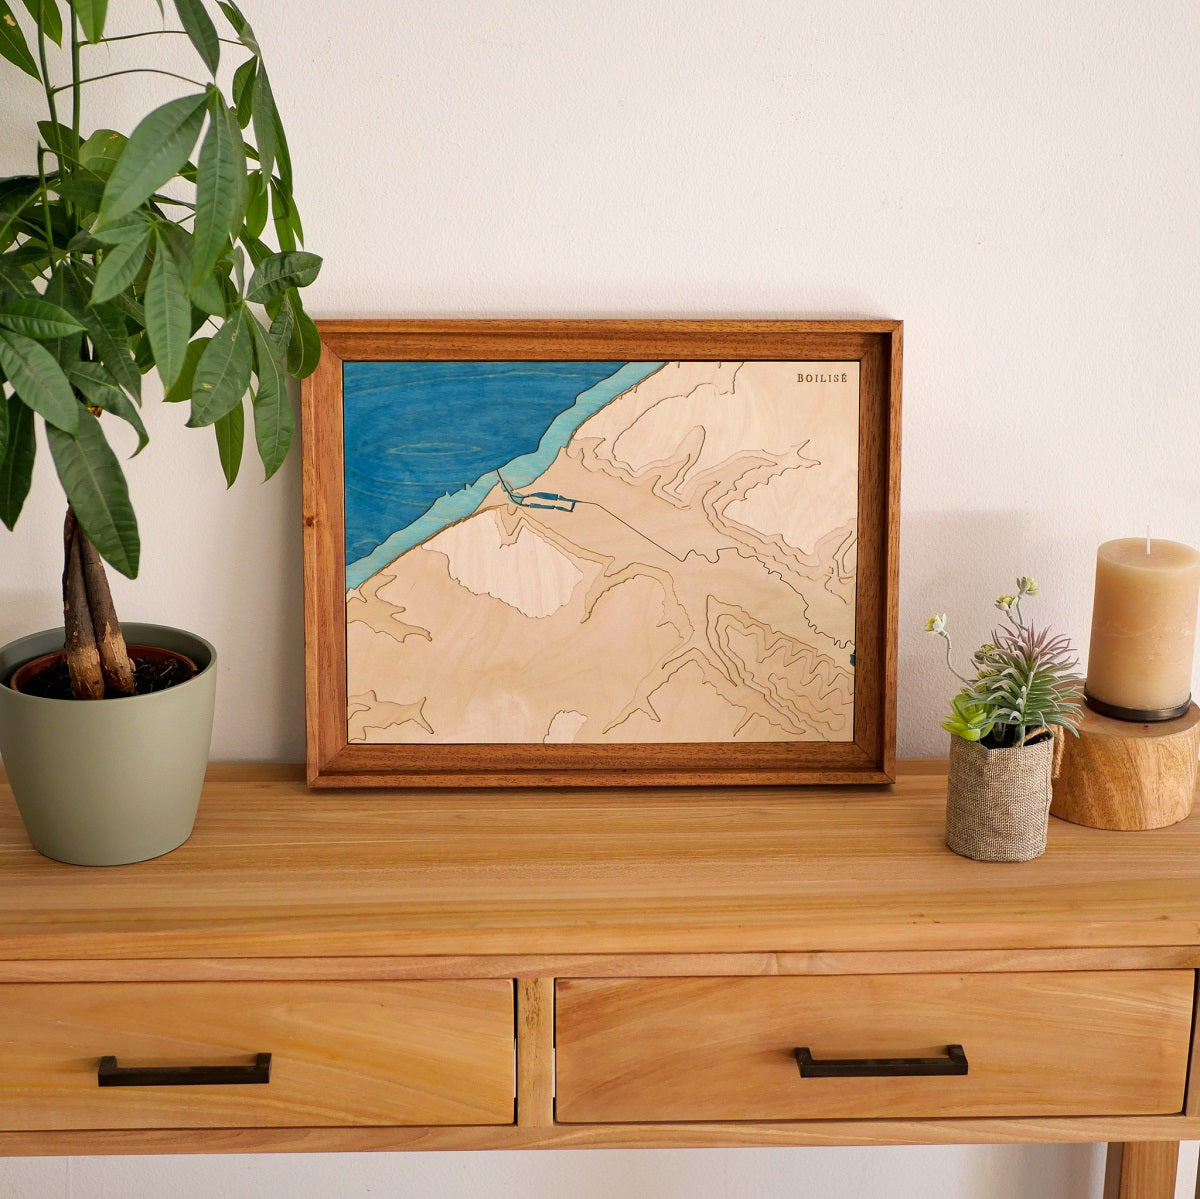 Décoration d'une commode d'entrée en bois avec une plante et une carte topographique